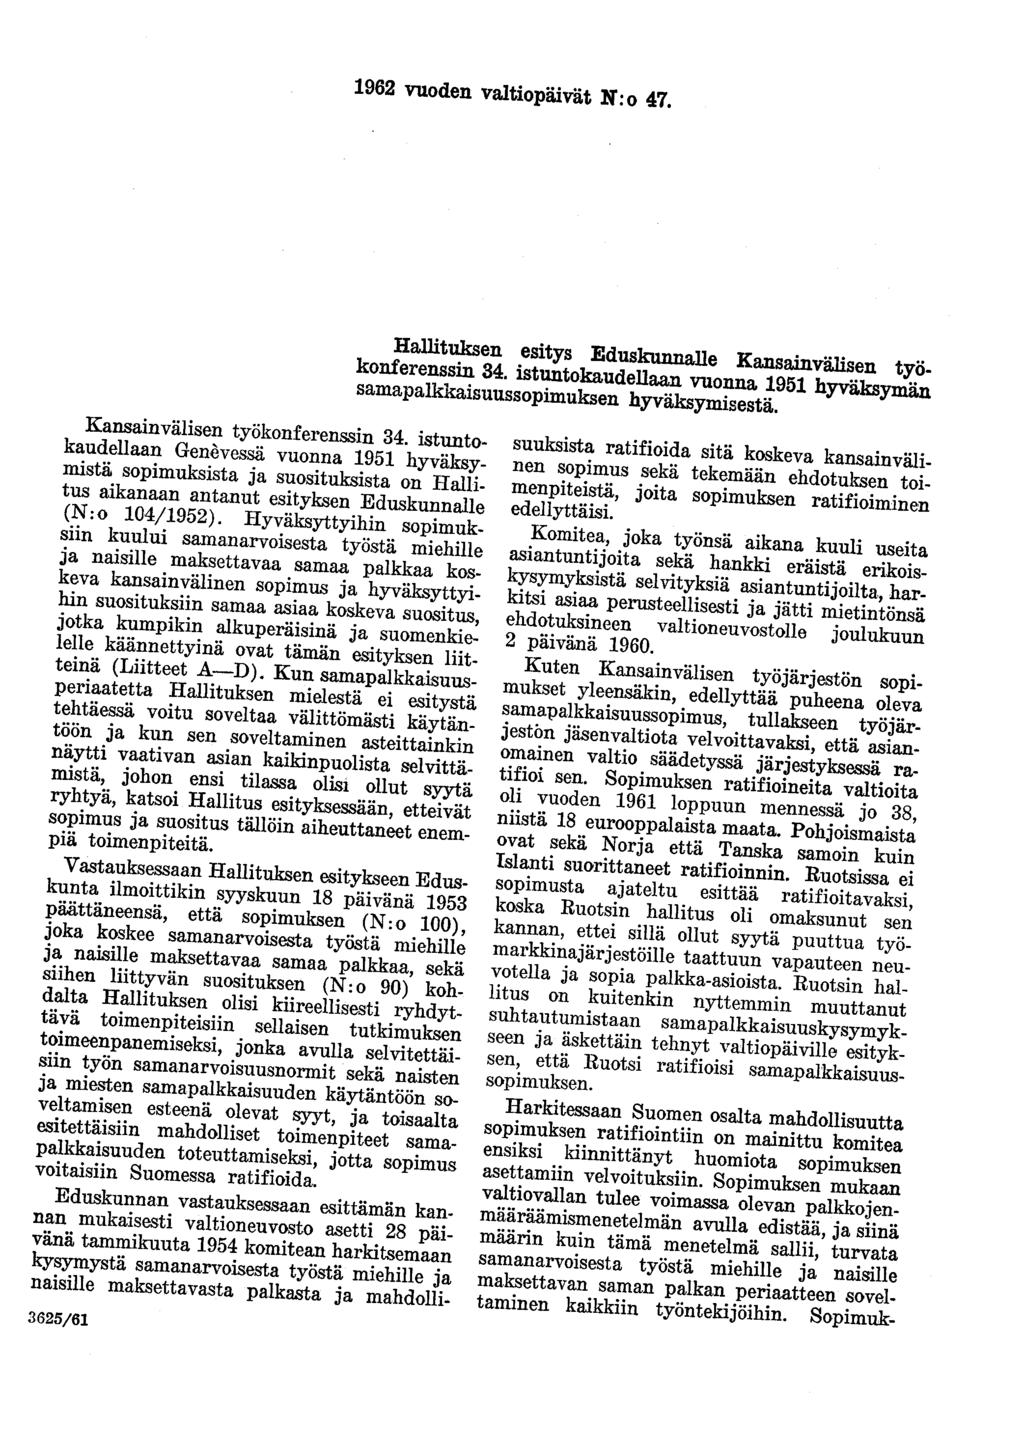 1962 vuoden valtiopäivät N:o 47. Hallituksen esitys Eduskunnalle Kansainvälisen työkonferenssin 34. istuntokaudellaan vuonna 1951 hyväksymän samapalkkaisuussopimuksen hyväksymisestä.